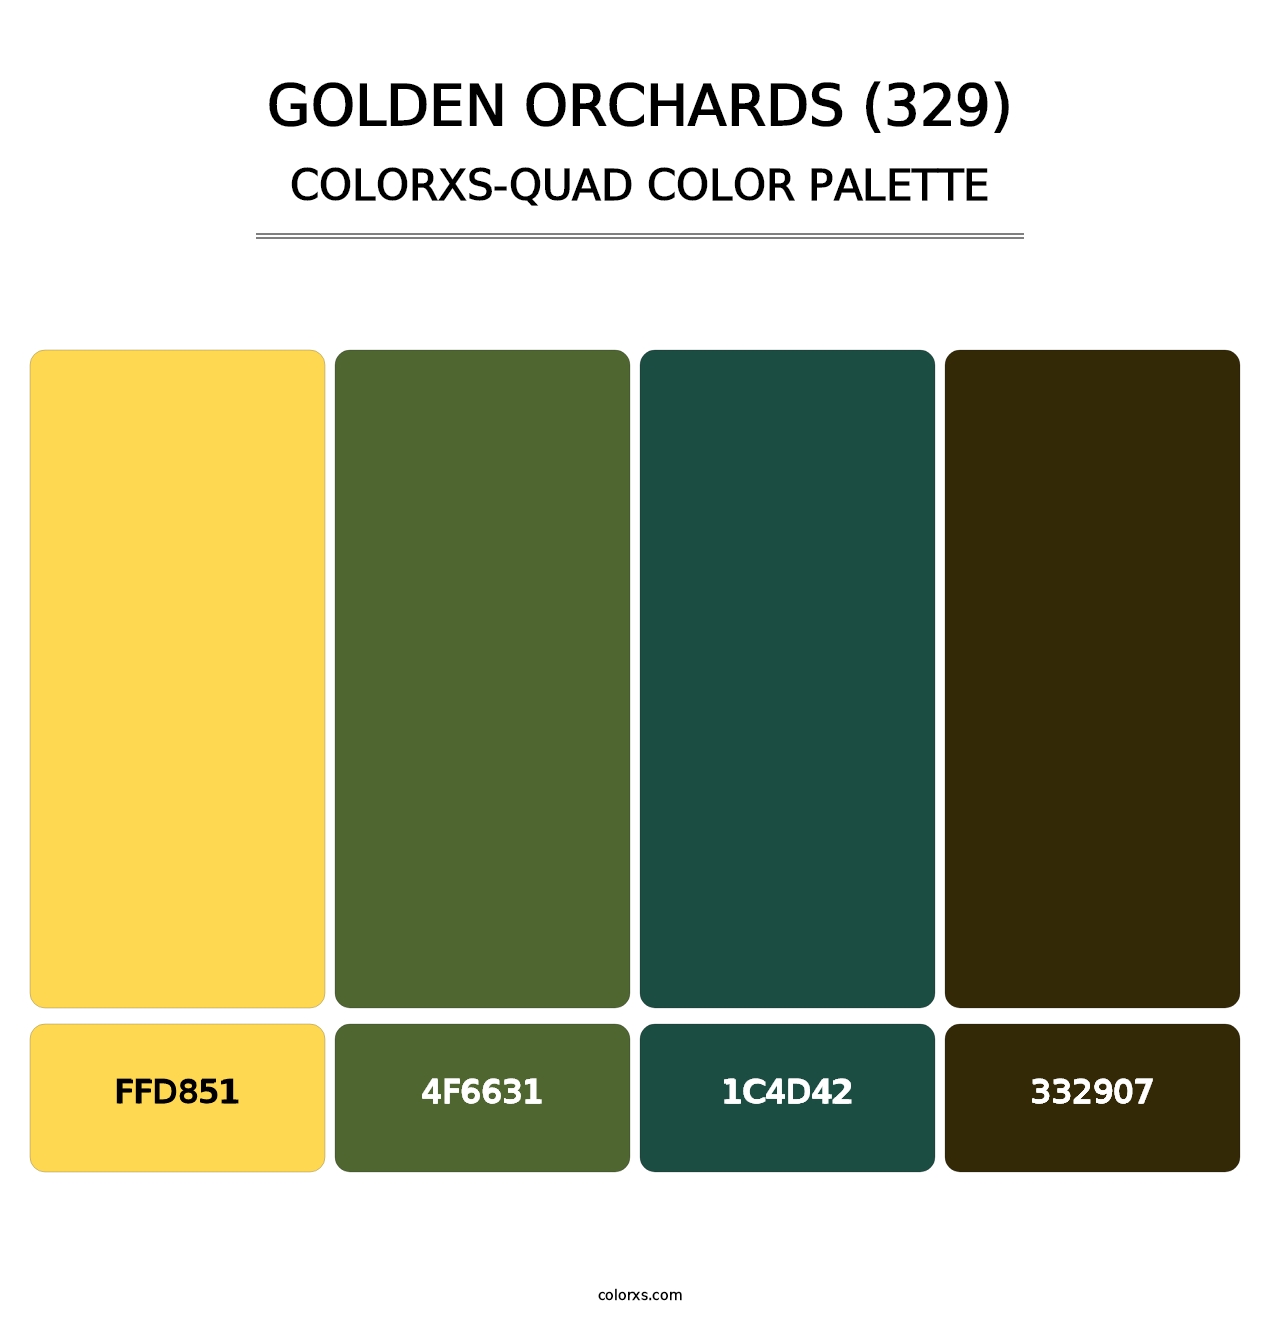 Golden Orchards (329) - Colorxs Quad Palette